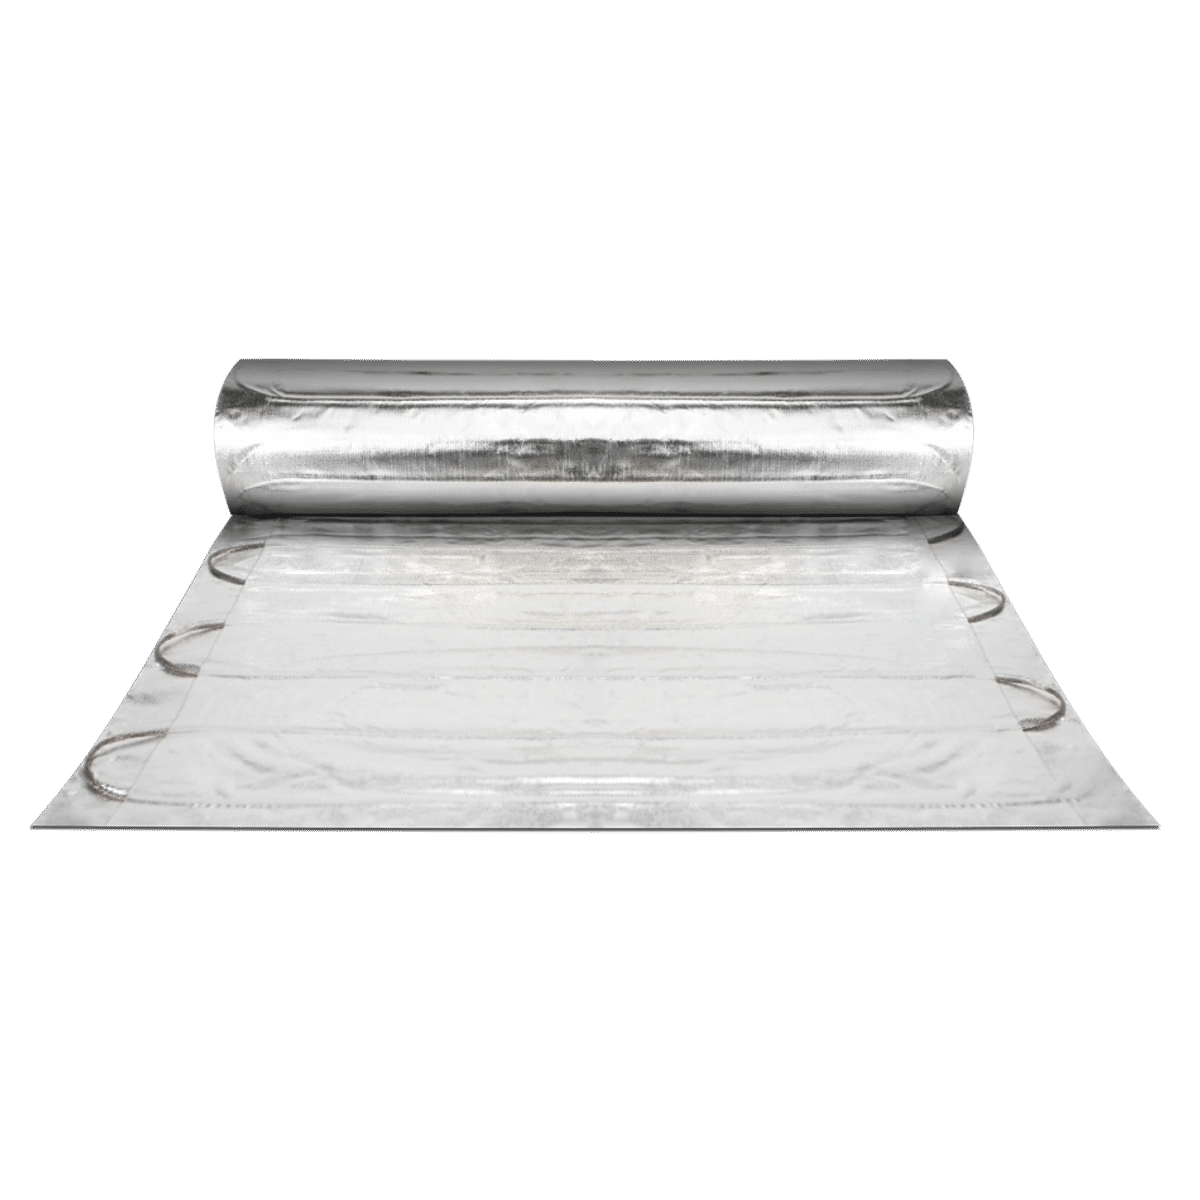 Mat Bench, 300x300mm, heat resistant (cement sheet)